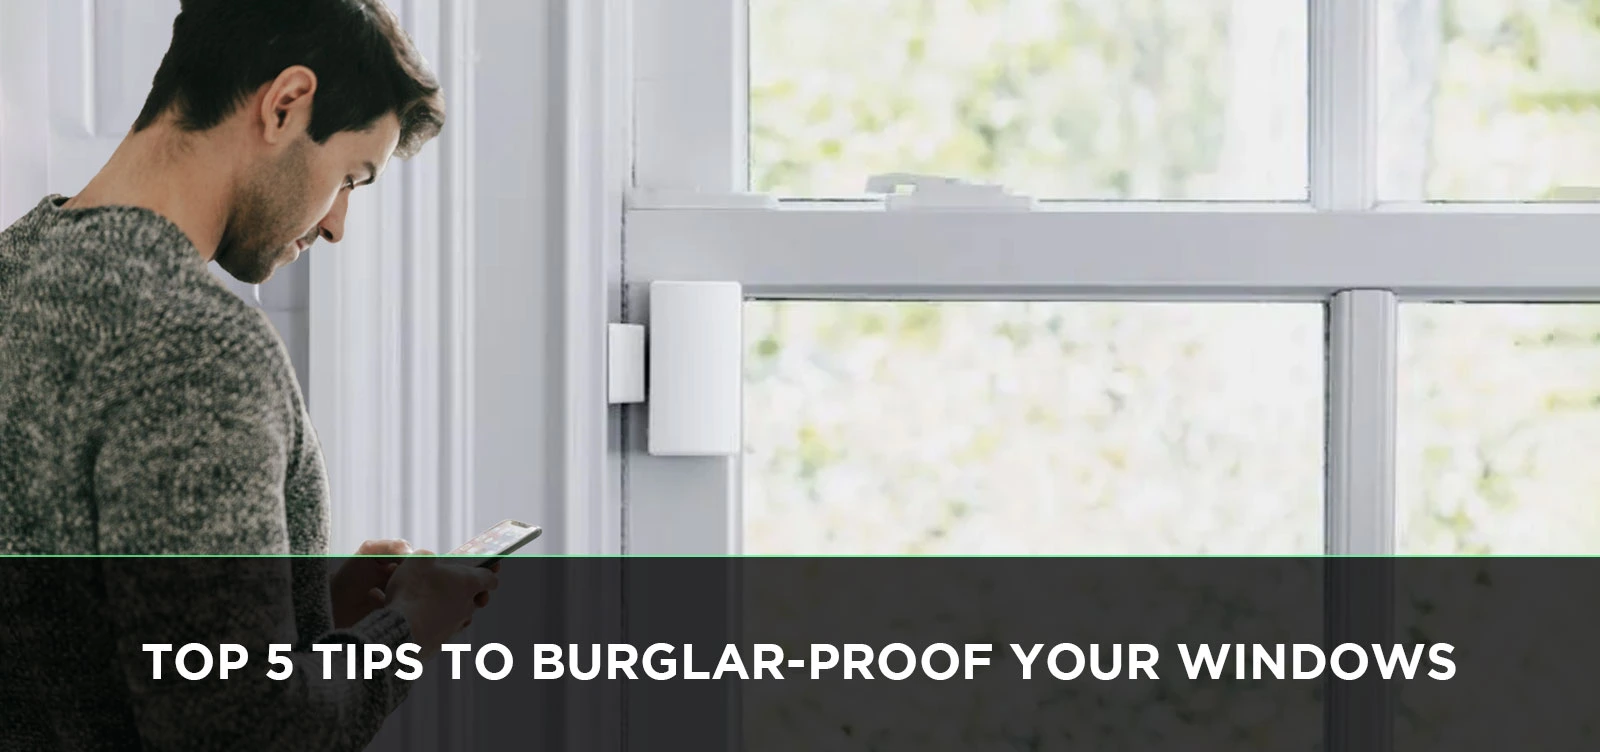 Top 5 Tips to Burglar-Proof Your Windows